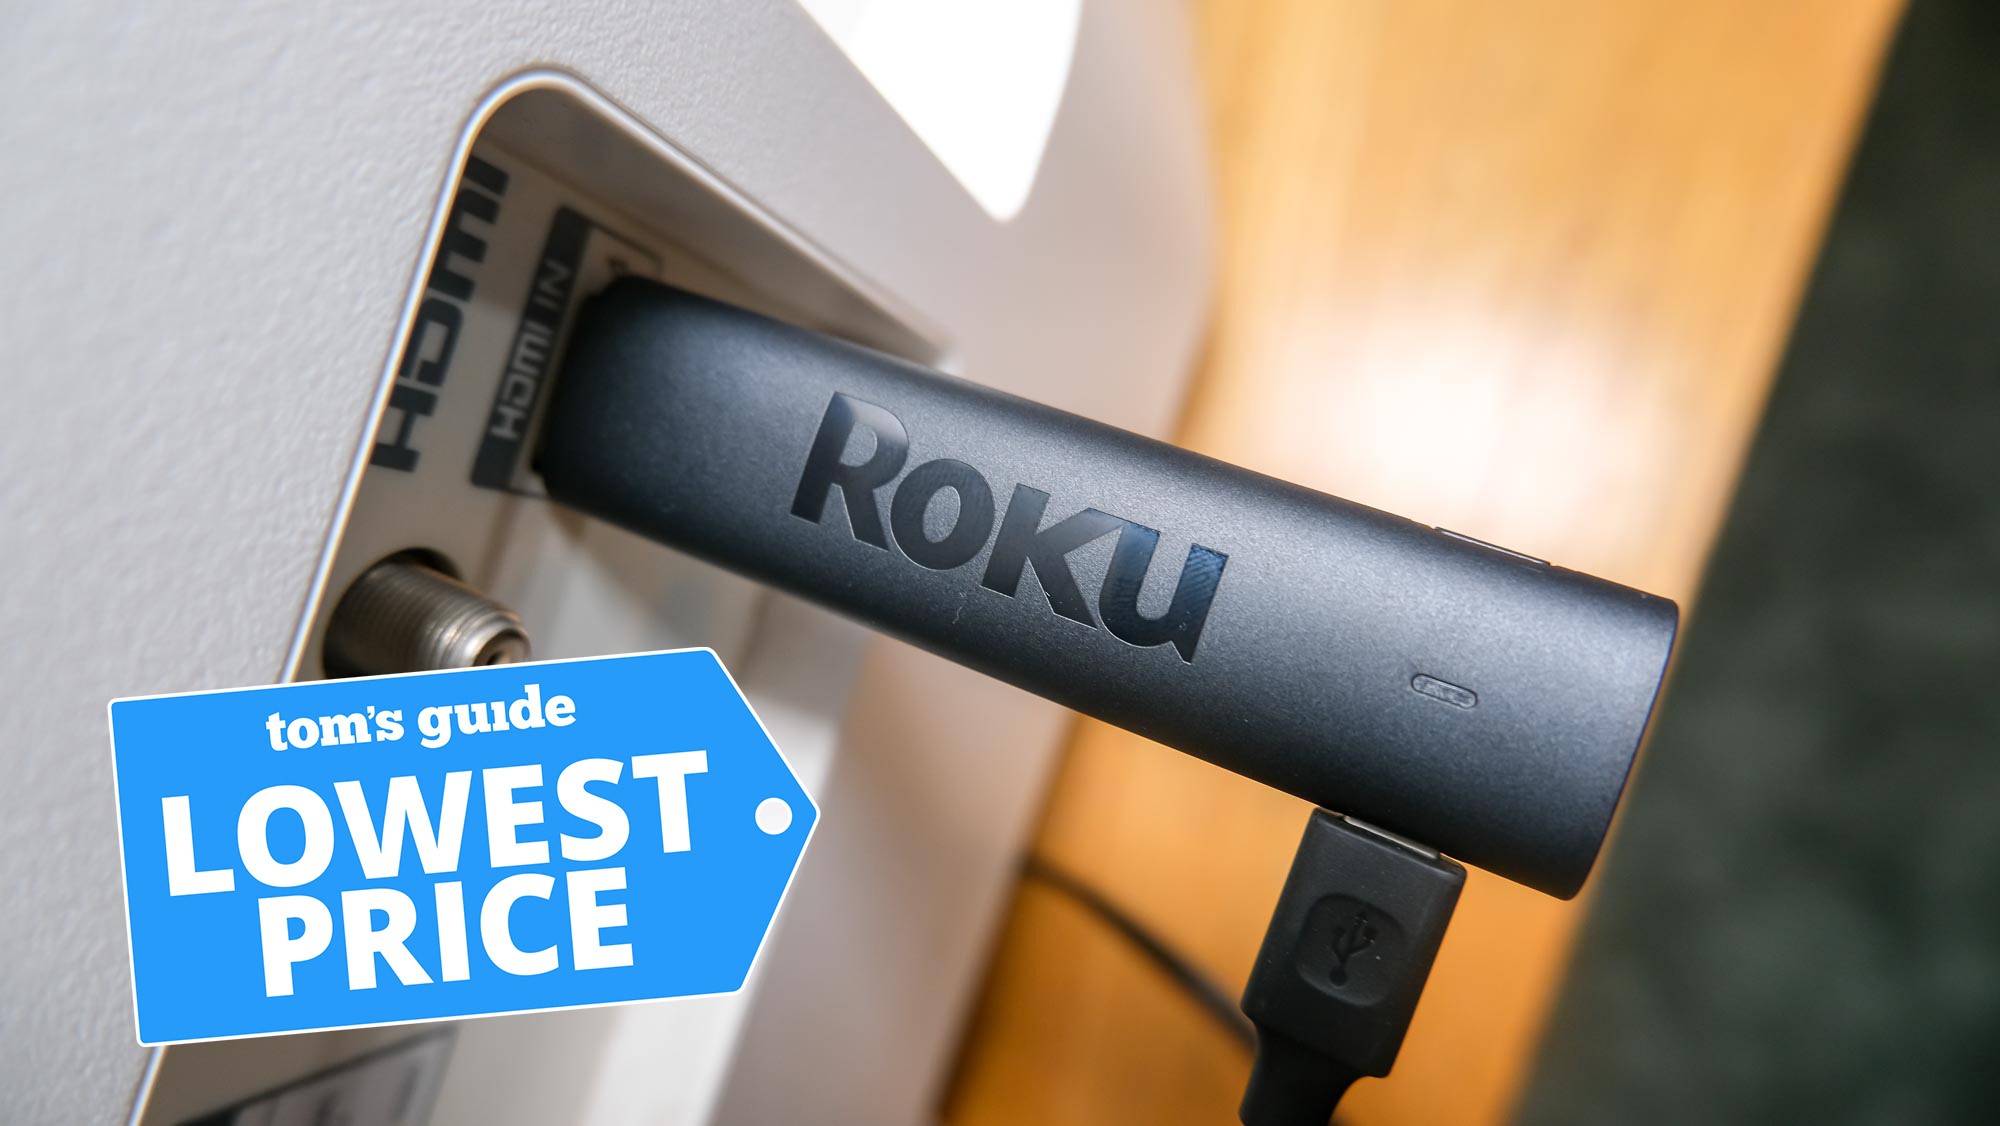 Le Roku Streaming Stick 4K se branche sur un port HDMI avec le graphique du prix le plus bas du Tom's Guide ci-dessus